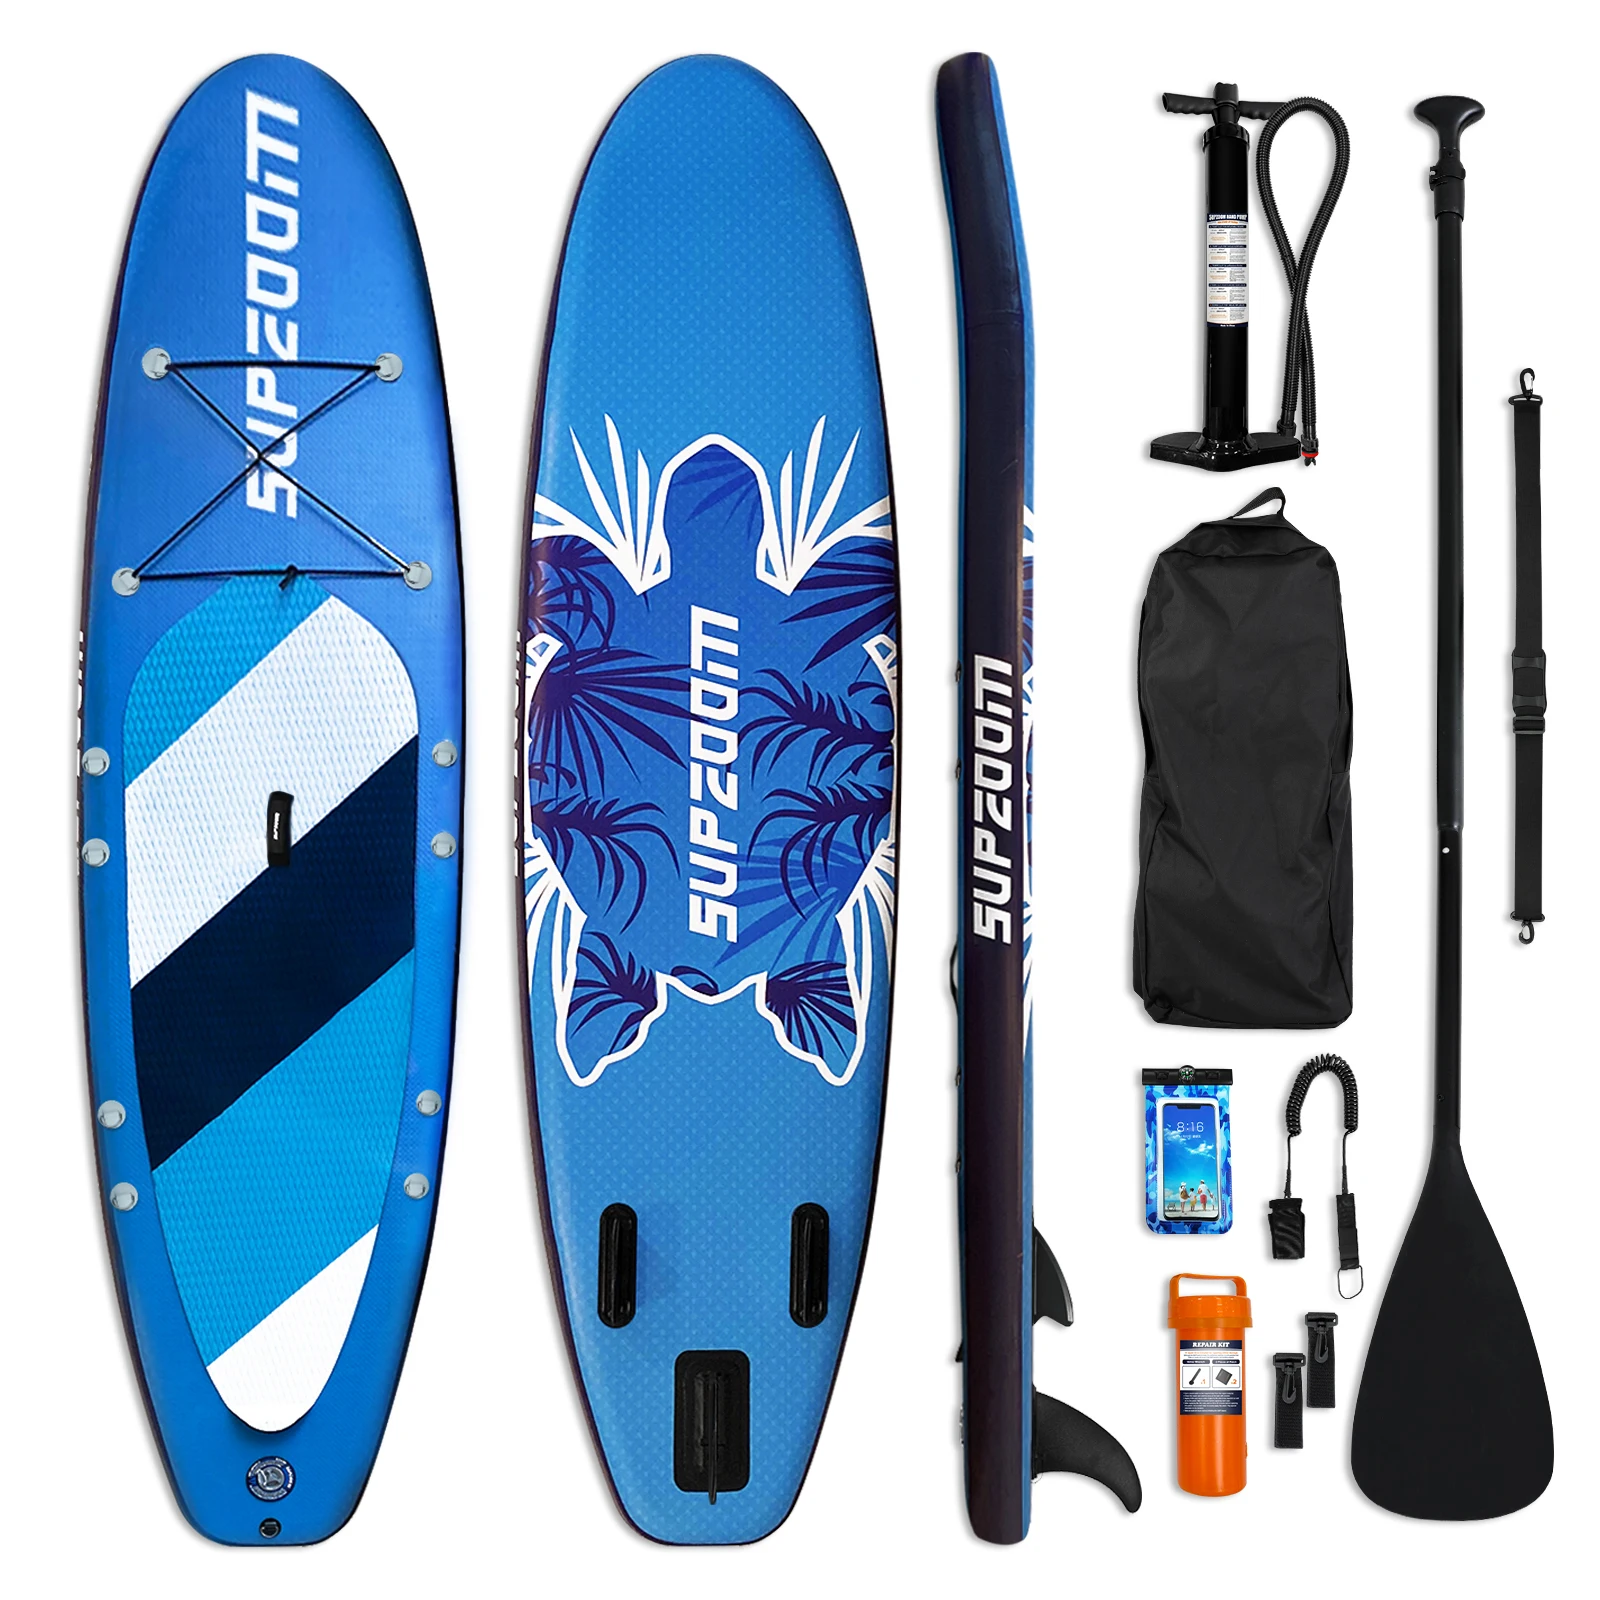 

Надувная доска для серфинга с рисунком черепахи, доска для серфинга, профессиональное соревнование, каноэ с веслом